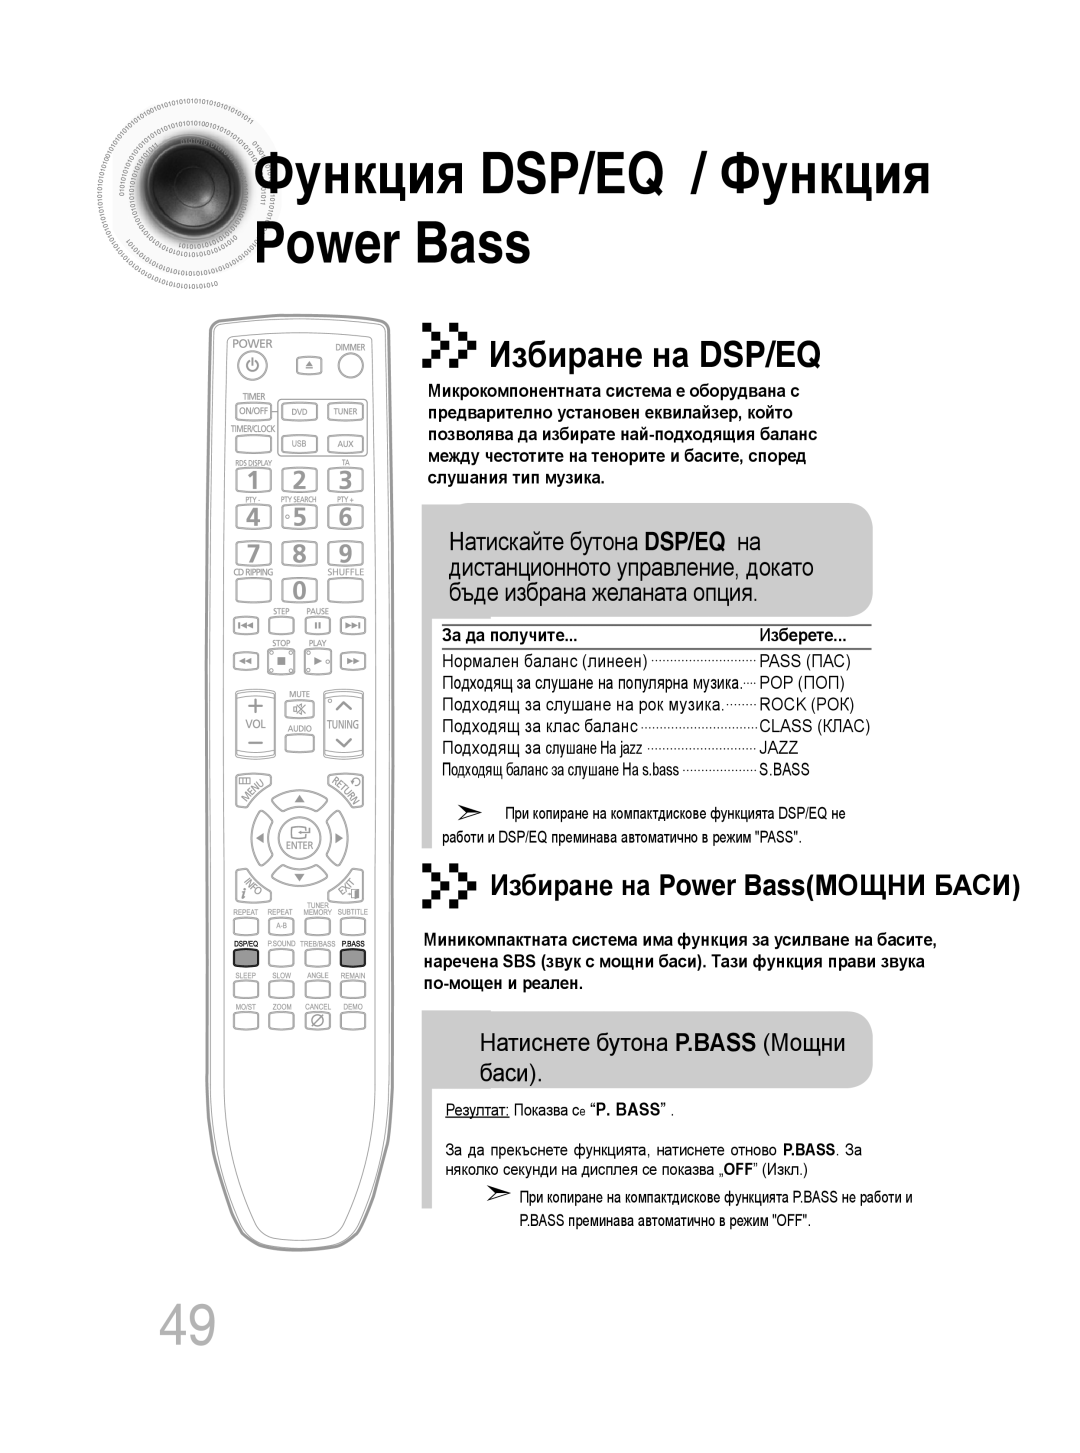 Samsung MM-C330D/EDC Функция DSP/EQ / Функция, Избиране на DSP/EQ, Избиране на Power BassМОЩНИ БАСИ, За да получите 